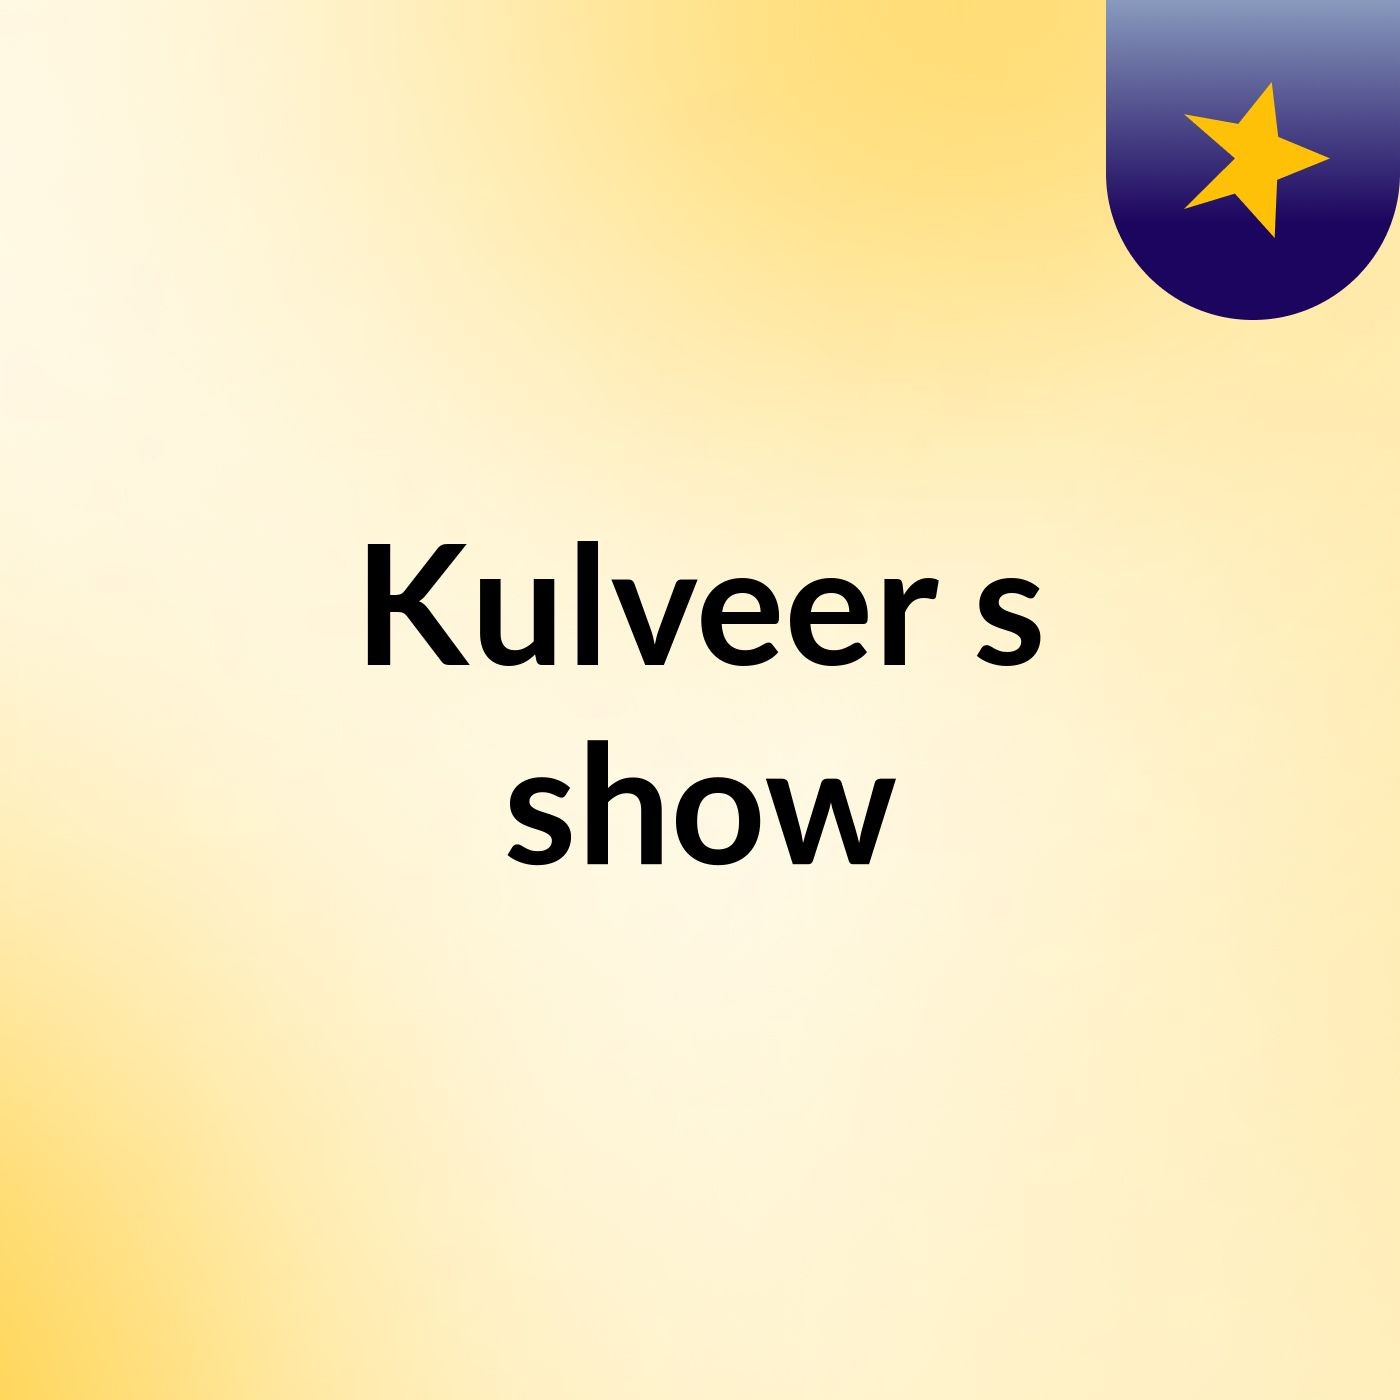 Kulveer's show